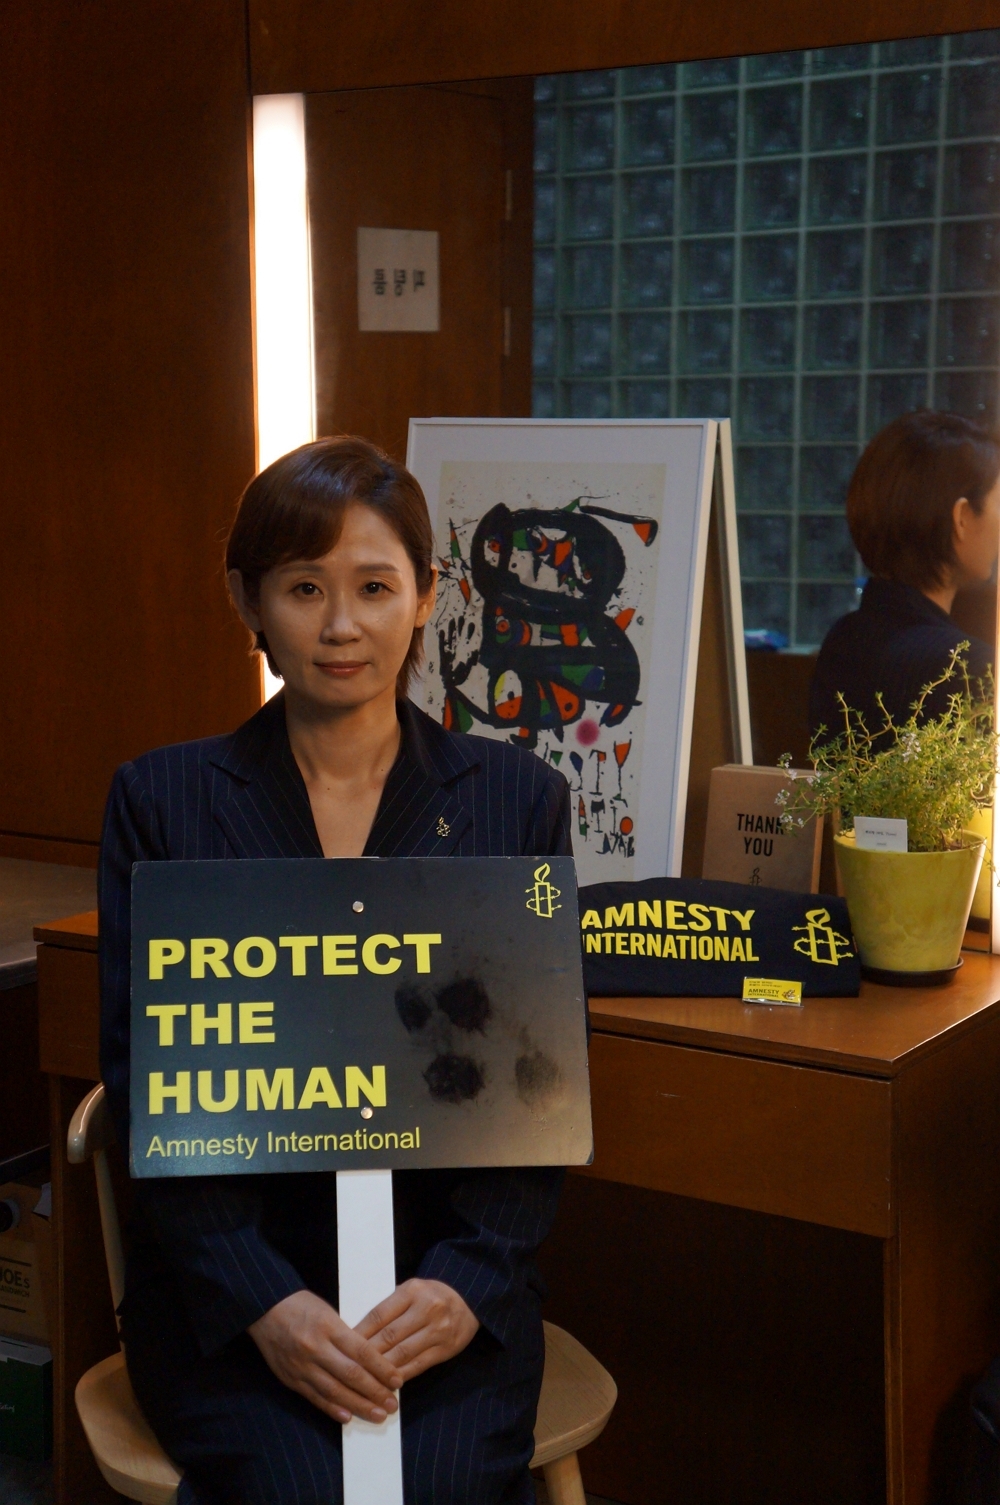 디지털 공간에서 자행되는 여성 폭력을 알리고 연대와 참여를 촉구하는 국제앰네스티 한국지부 후원 캠페인 영상 '브레이브(BRAVE)'에 배우 김선영씨가 재능기부로 출연했다.